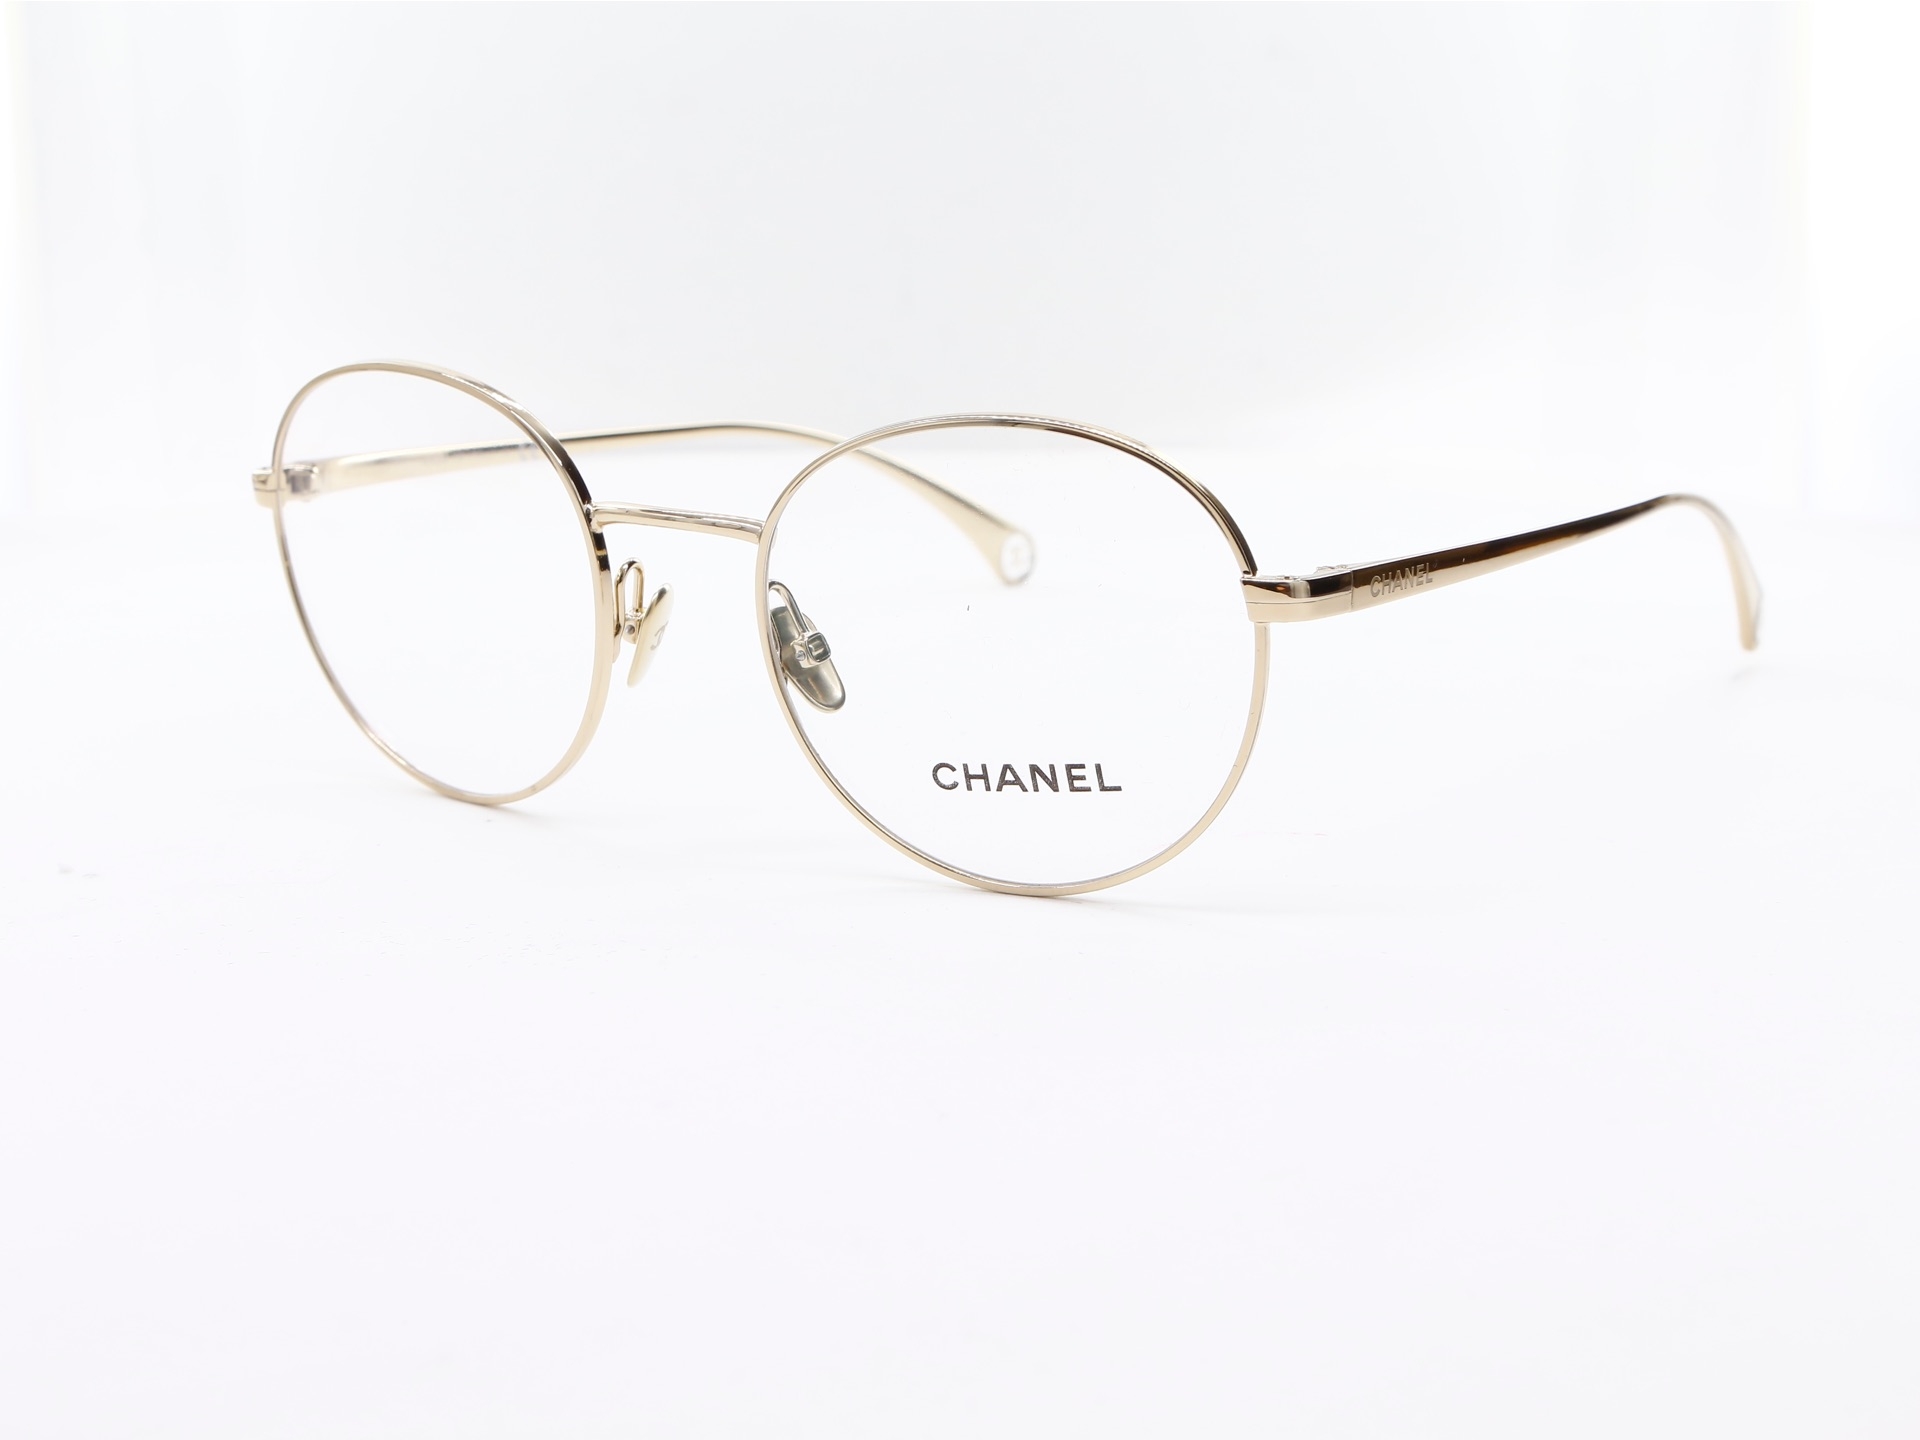 Chanel - ref: 87352